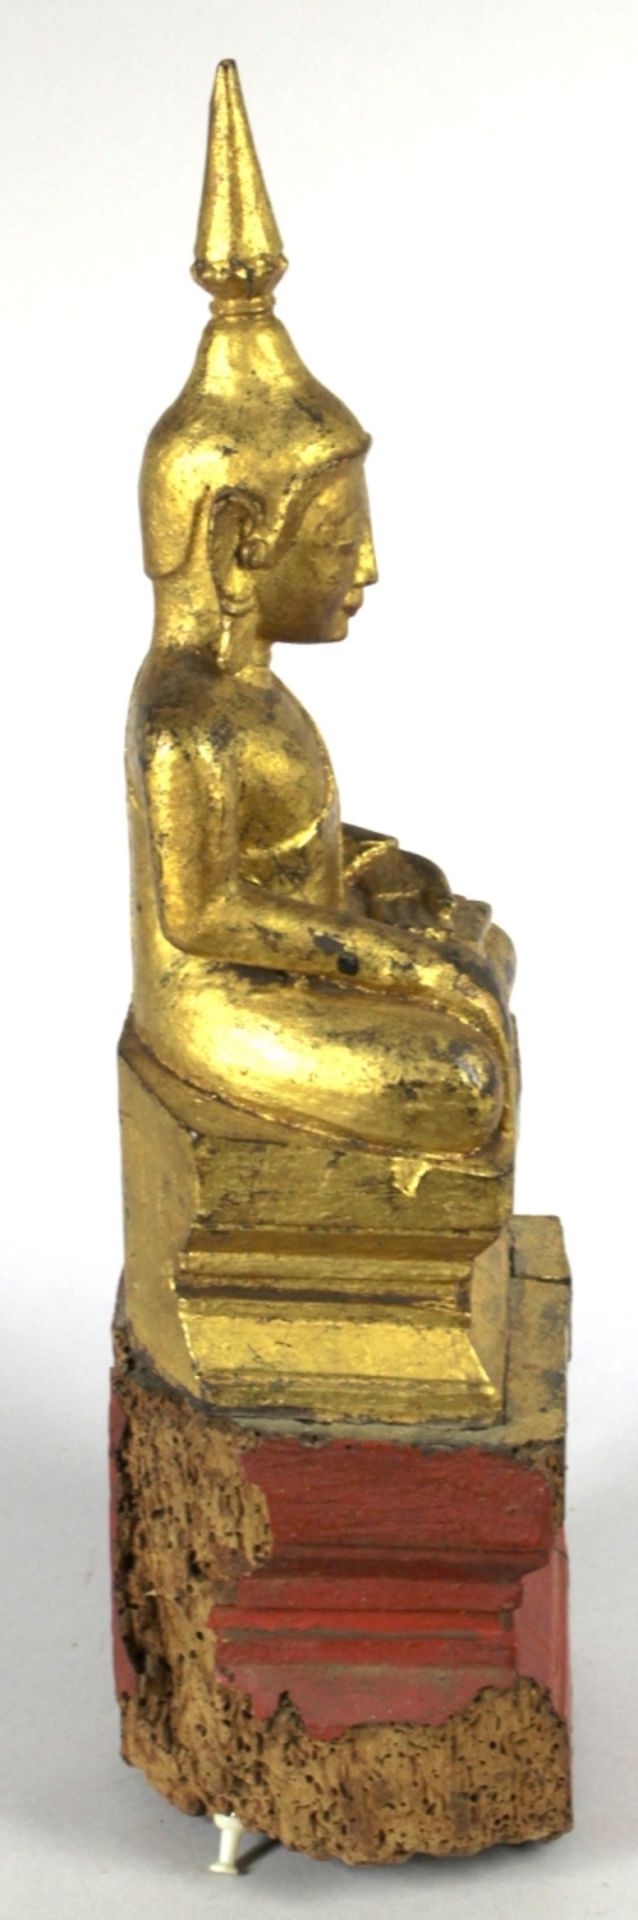 Holz-Buddha, Burma, 18./19. Jh., auf gestuftem Rechteckpodest gestufter Rechtecksockel - Bild 4 aus 5